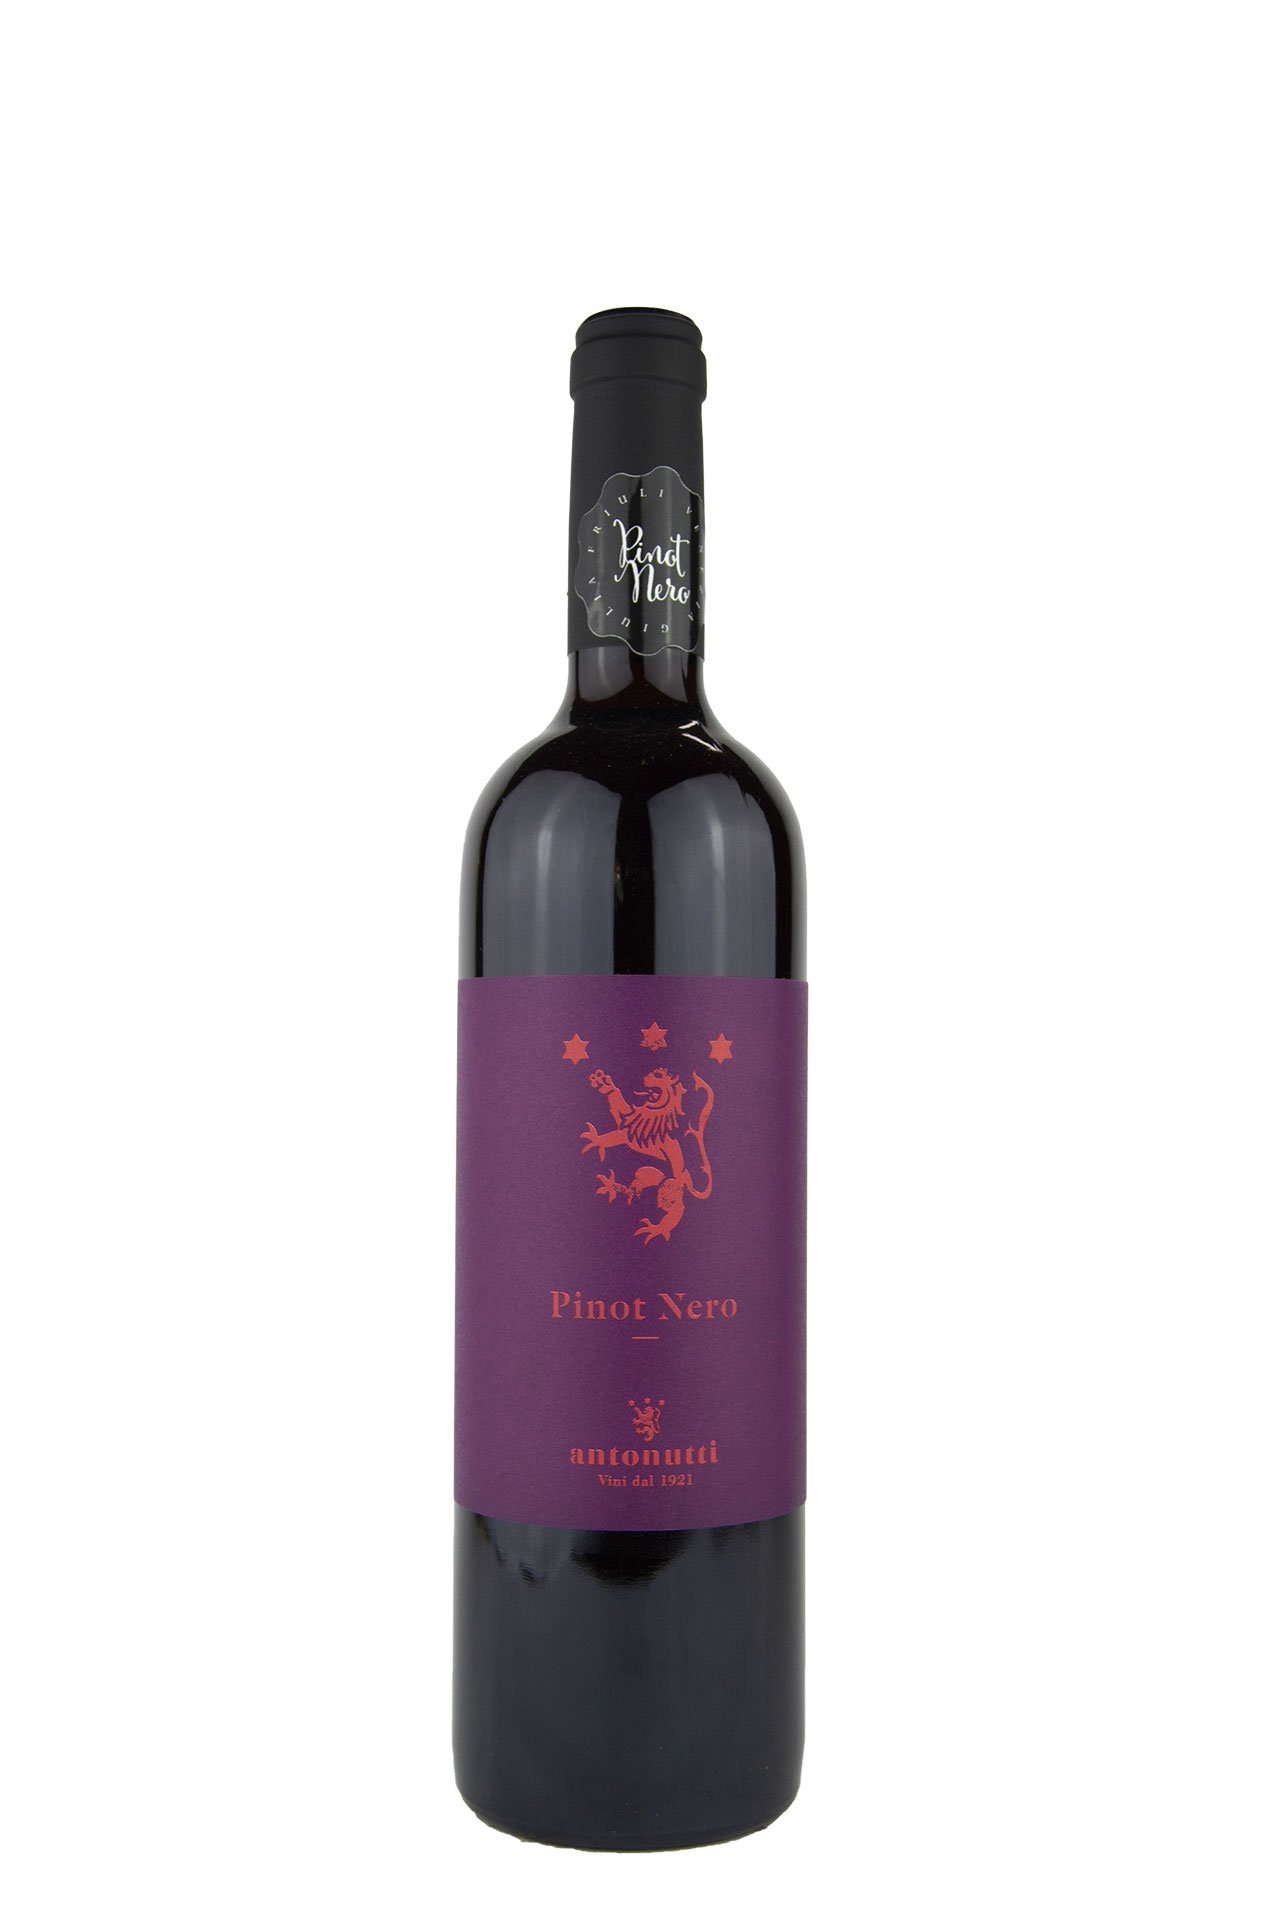 Antonutti – Pinot Nero